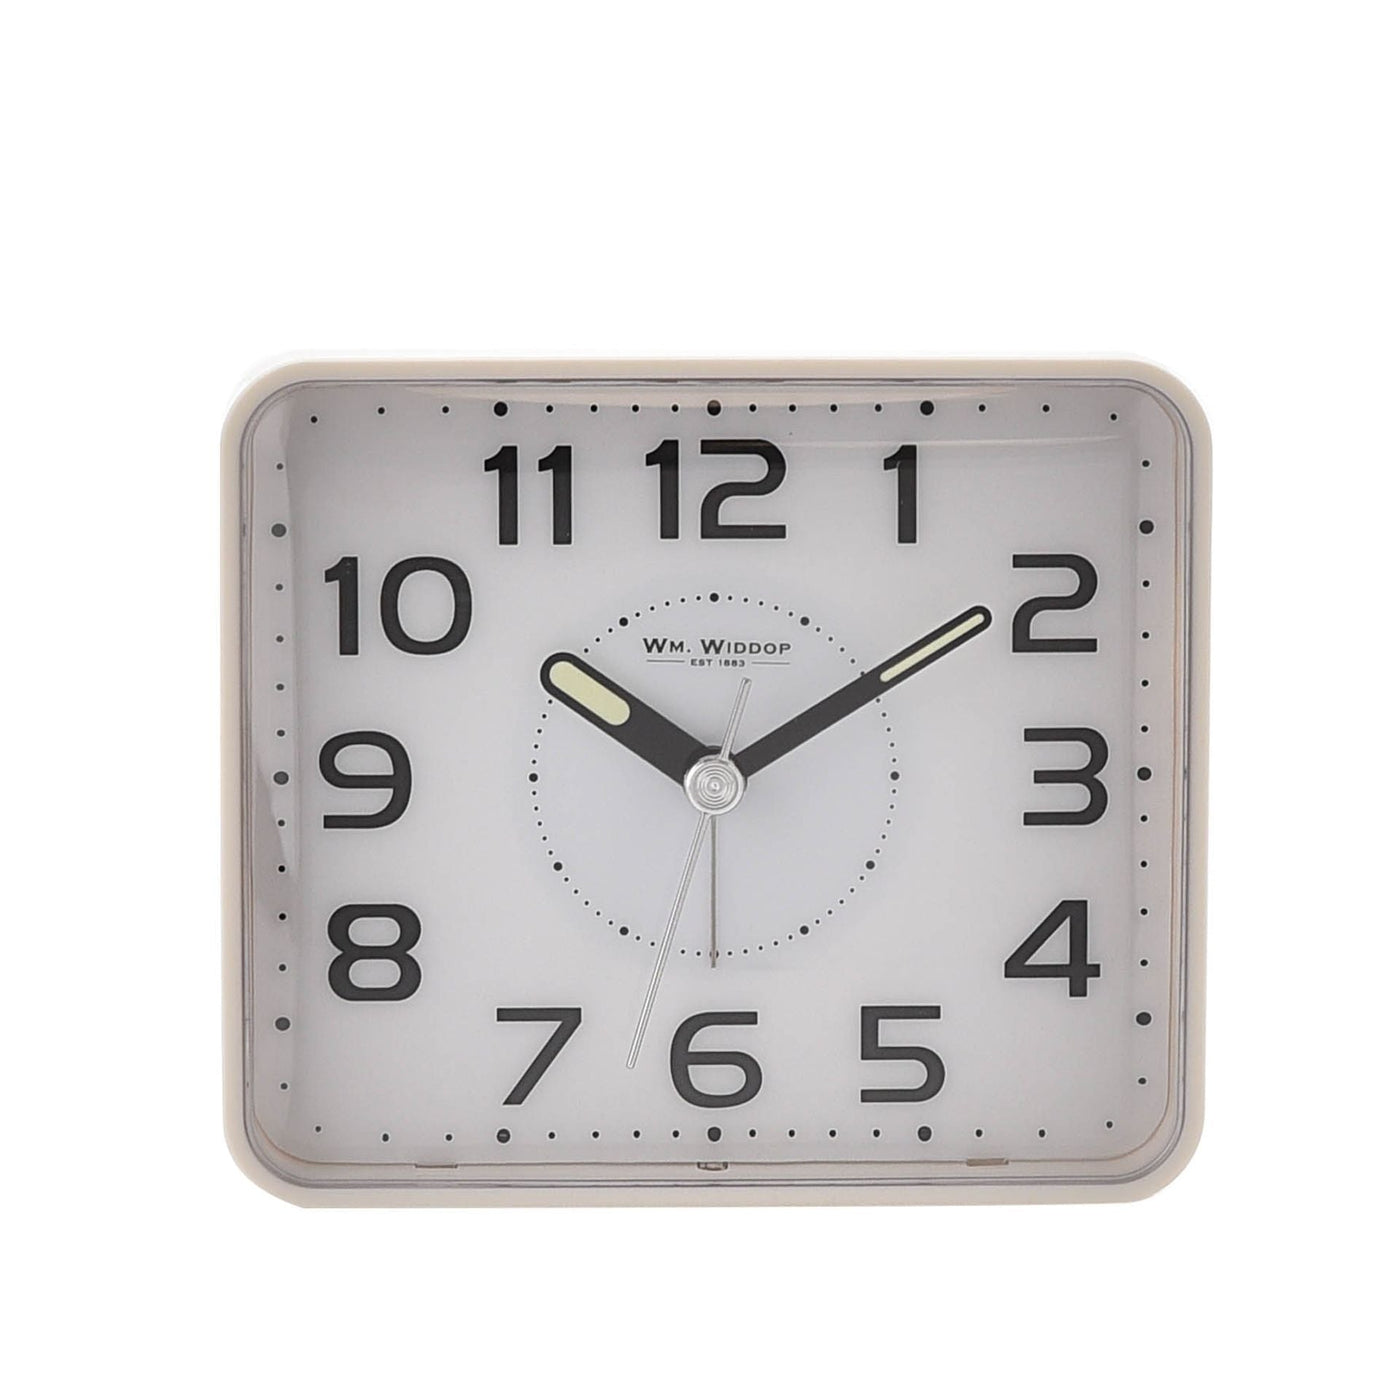 WM.Widdop. Alarm Clock White *NEW* - timeframedclocks